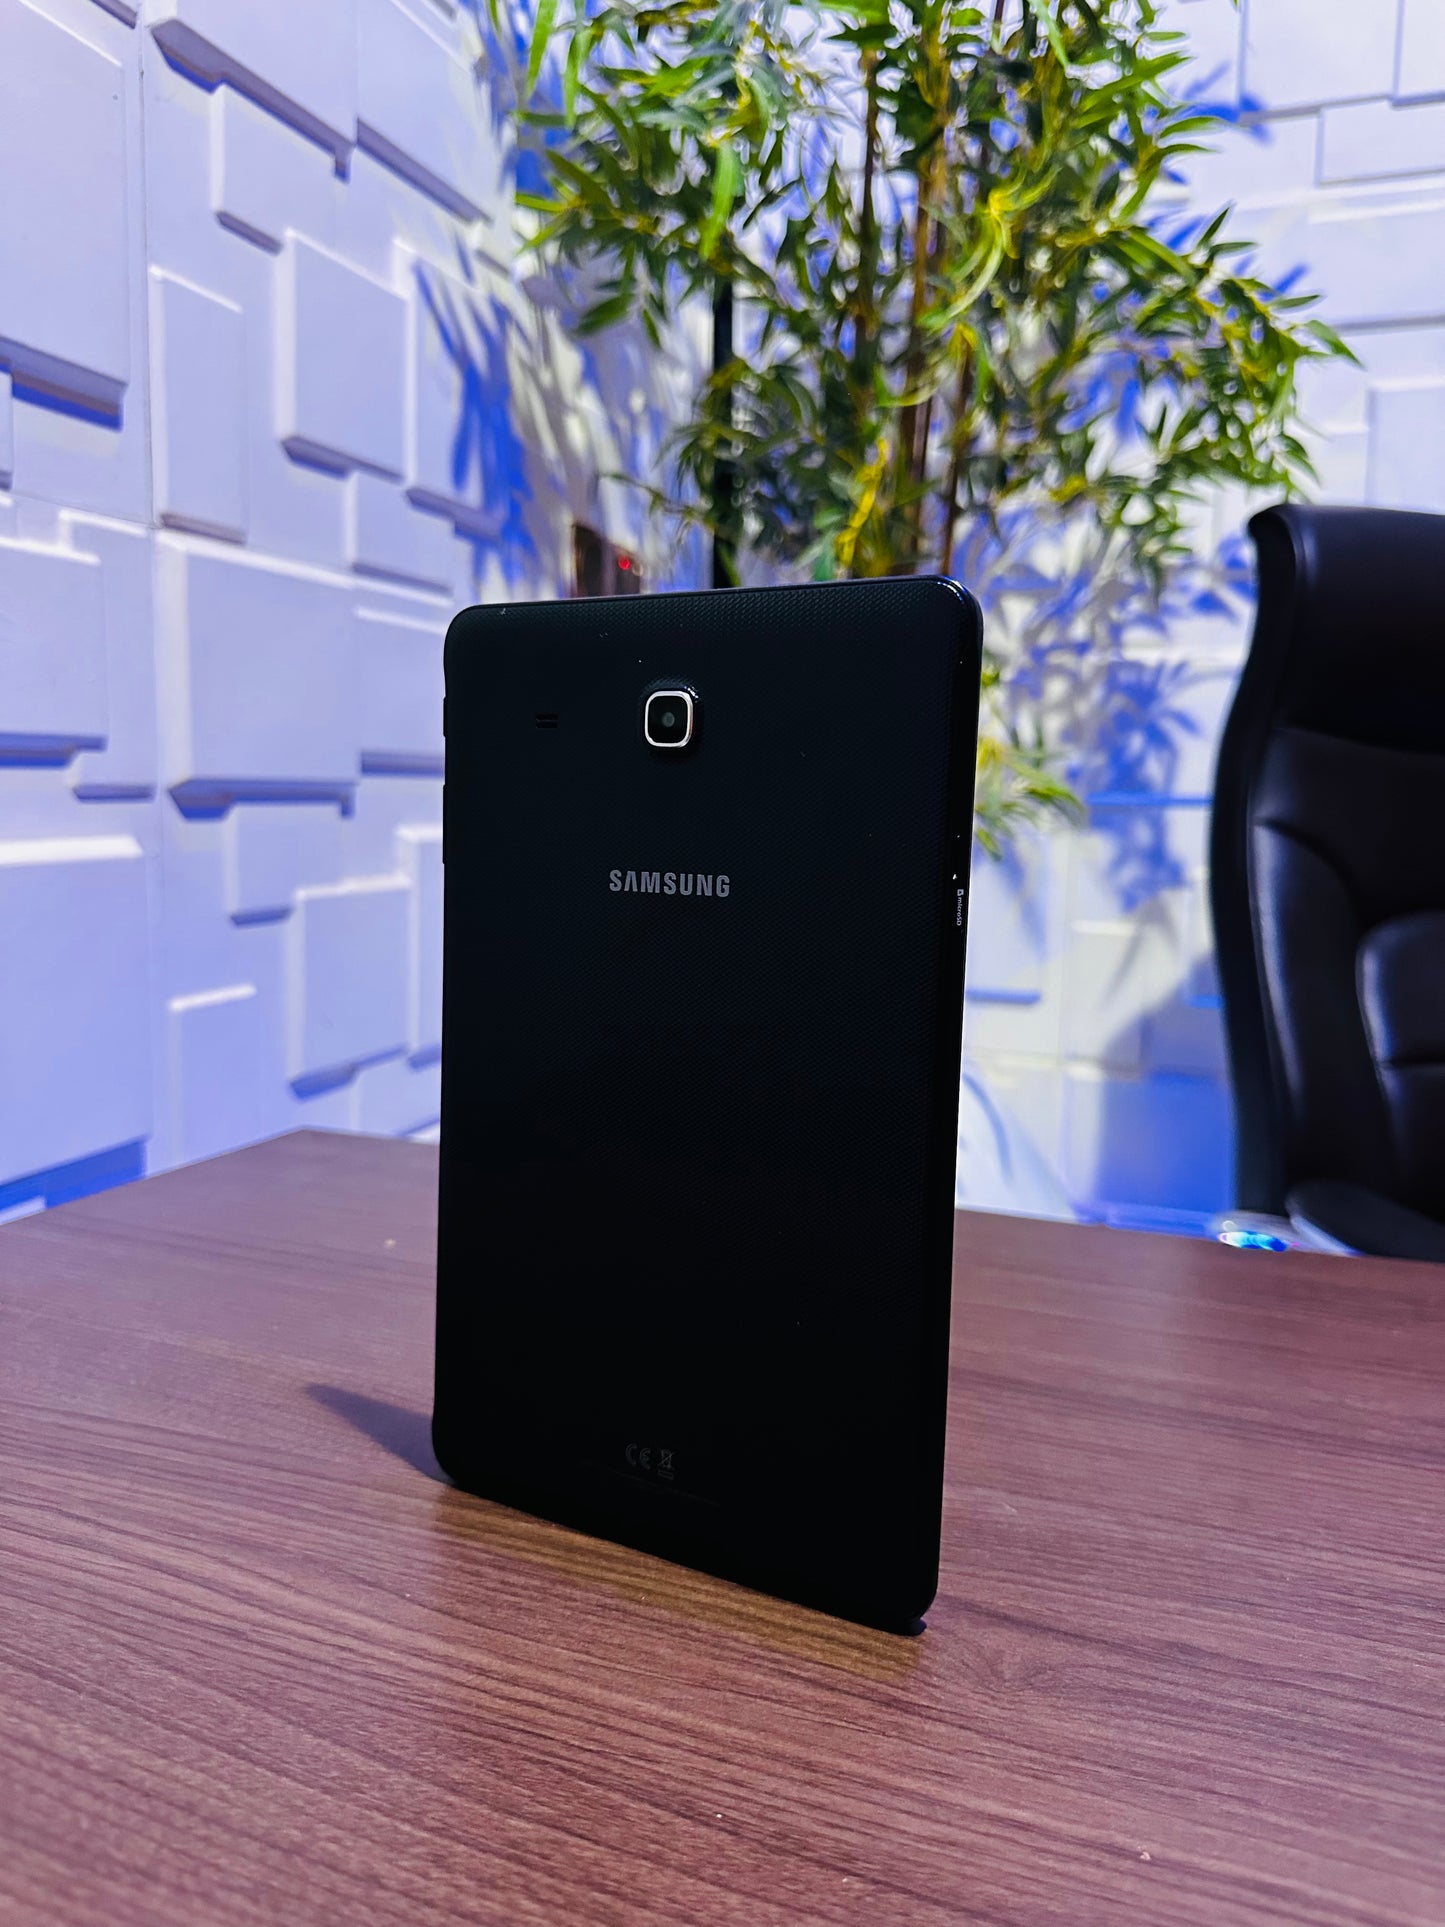 Samsung Galaxy Tab E SM-T560 - 8GB - Black